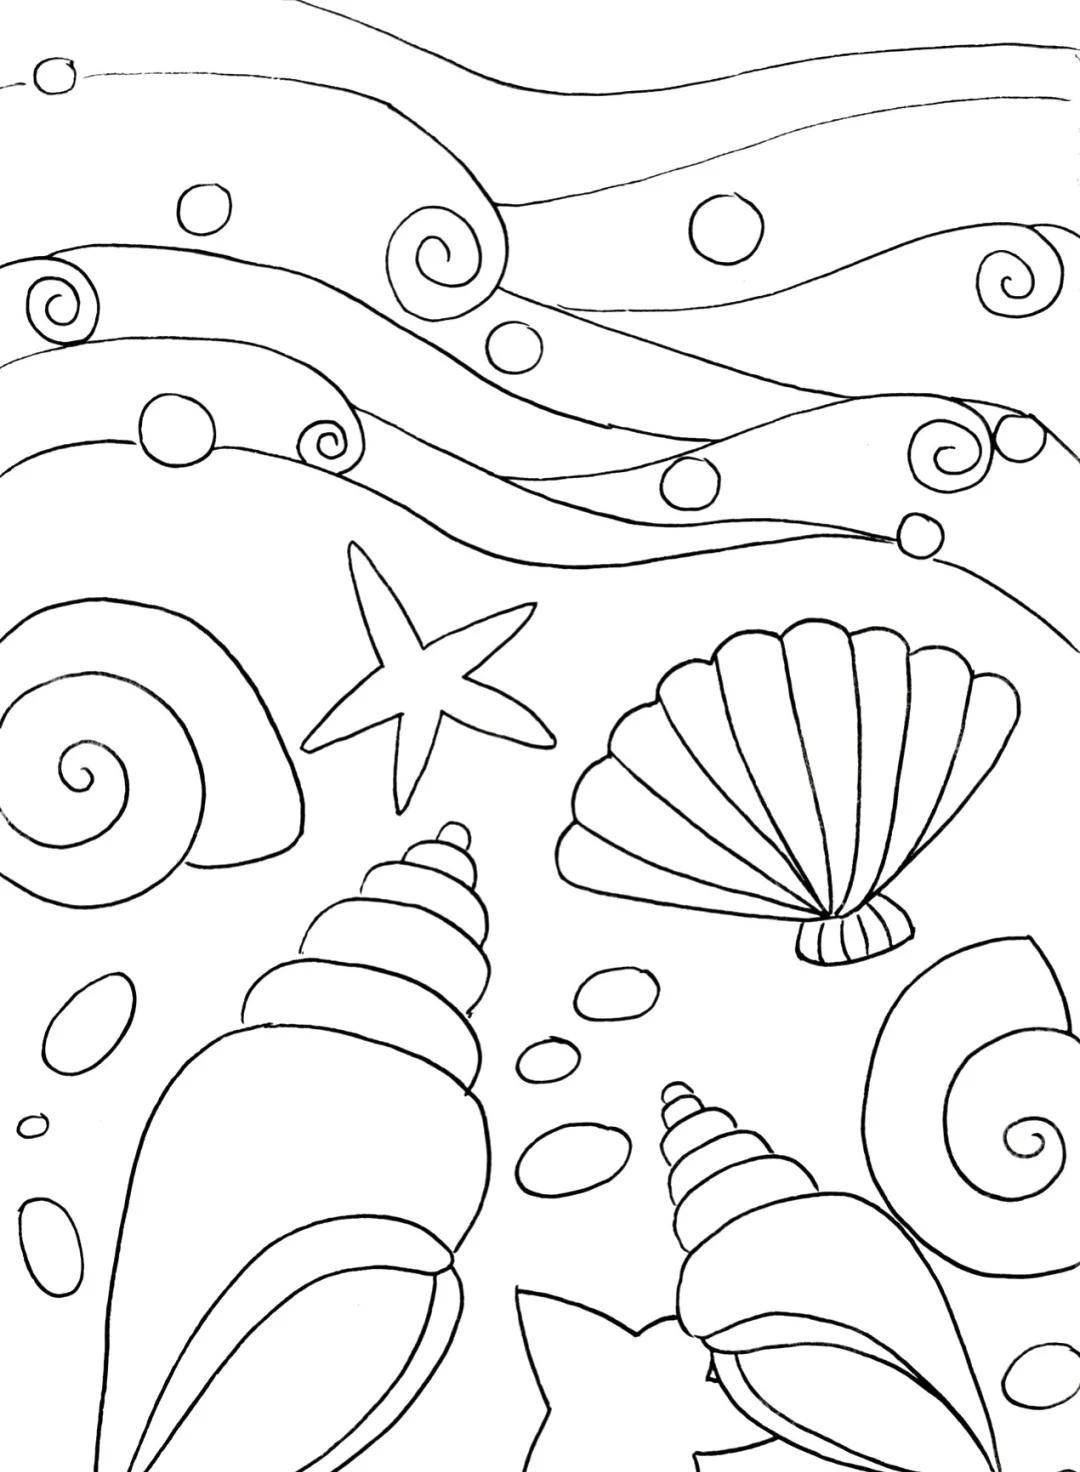 2,画远处的海浪画海滩的外形各异的贝壳,海星,小石头,1,准备白色卡纸